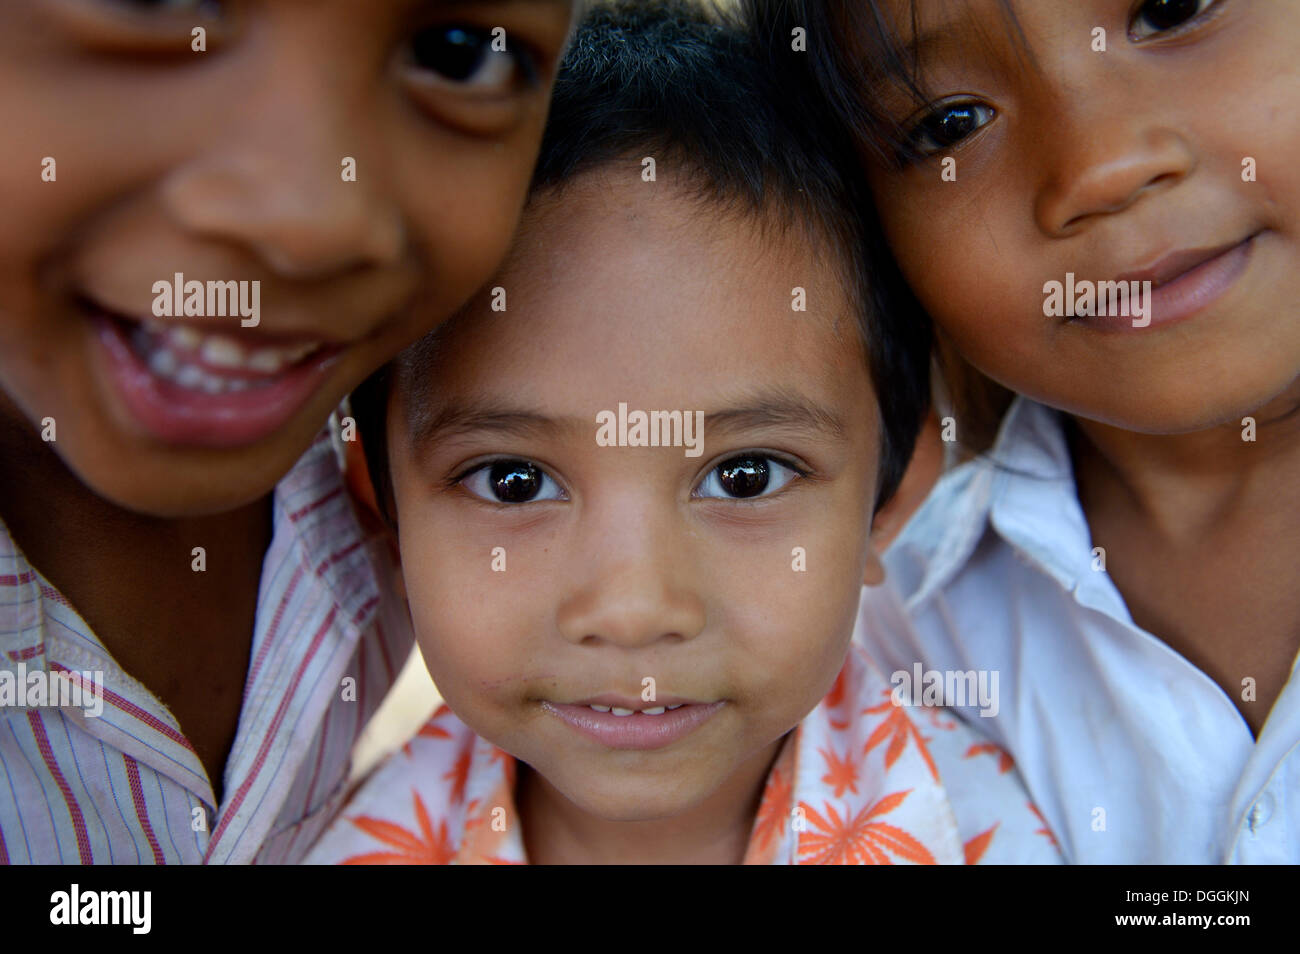 Deux garçons et une fille, debout près l'un de l'autre, portrait, Lompong Village, district, Province de Takéo Bathi, Cambodge Banque D'Images